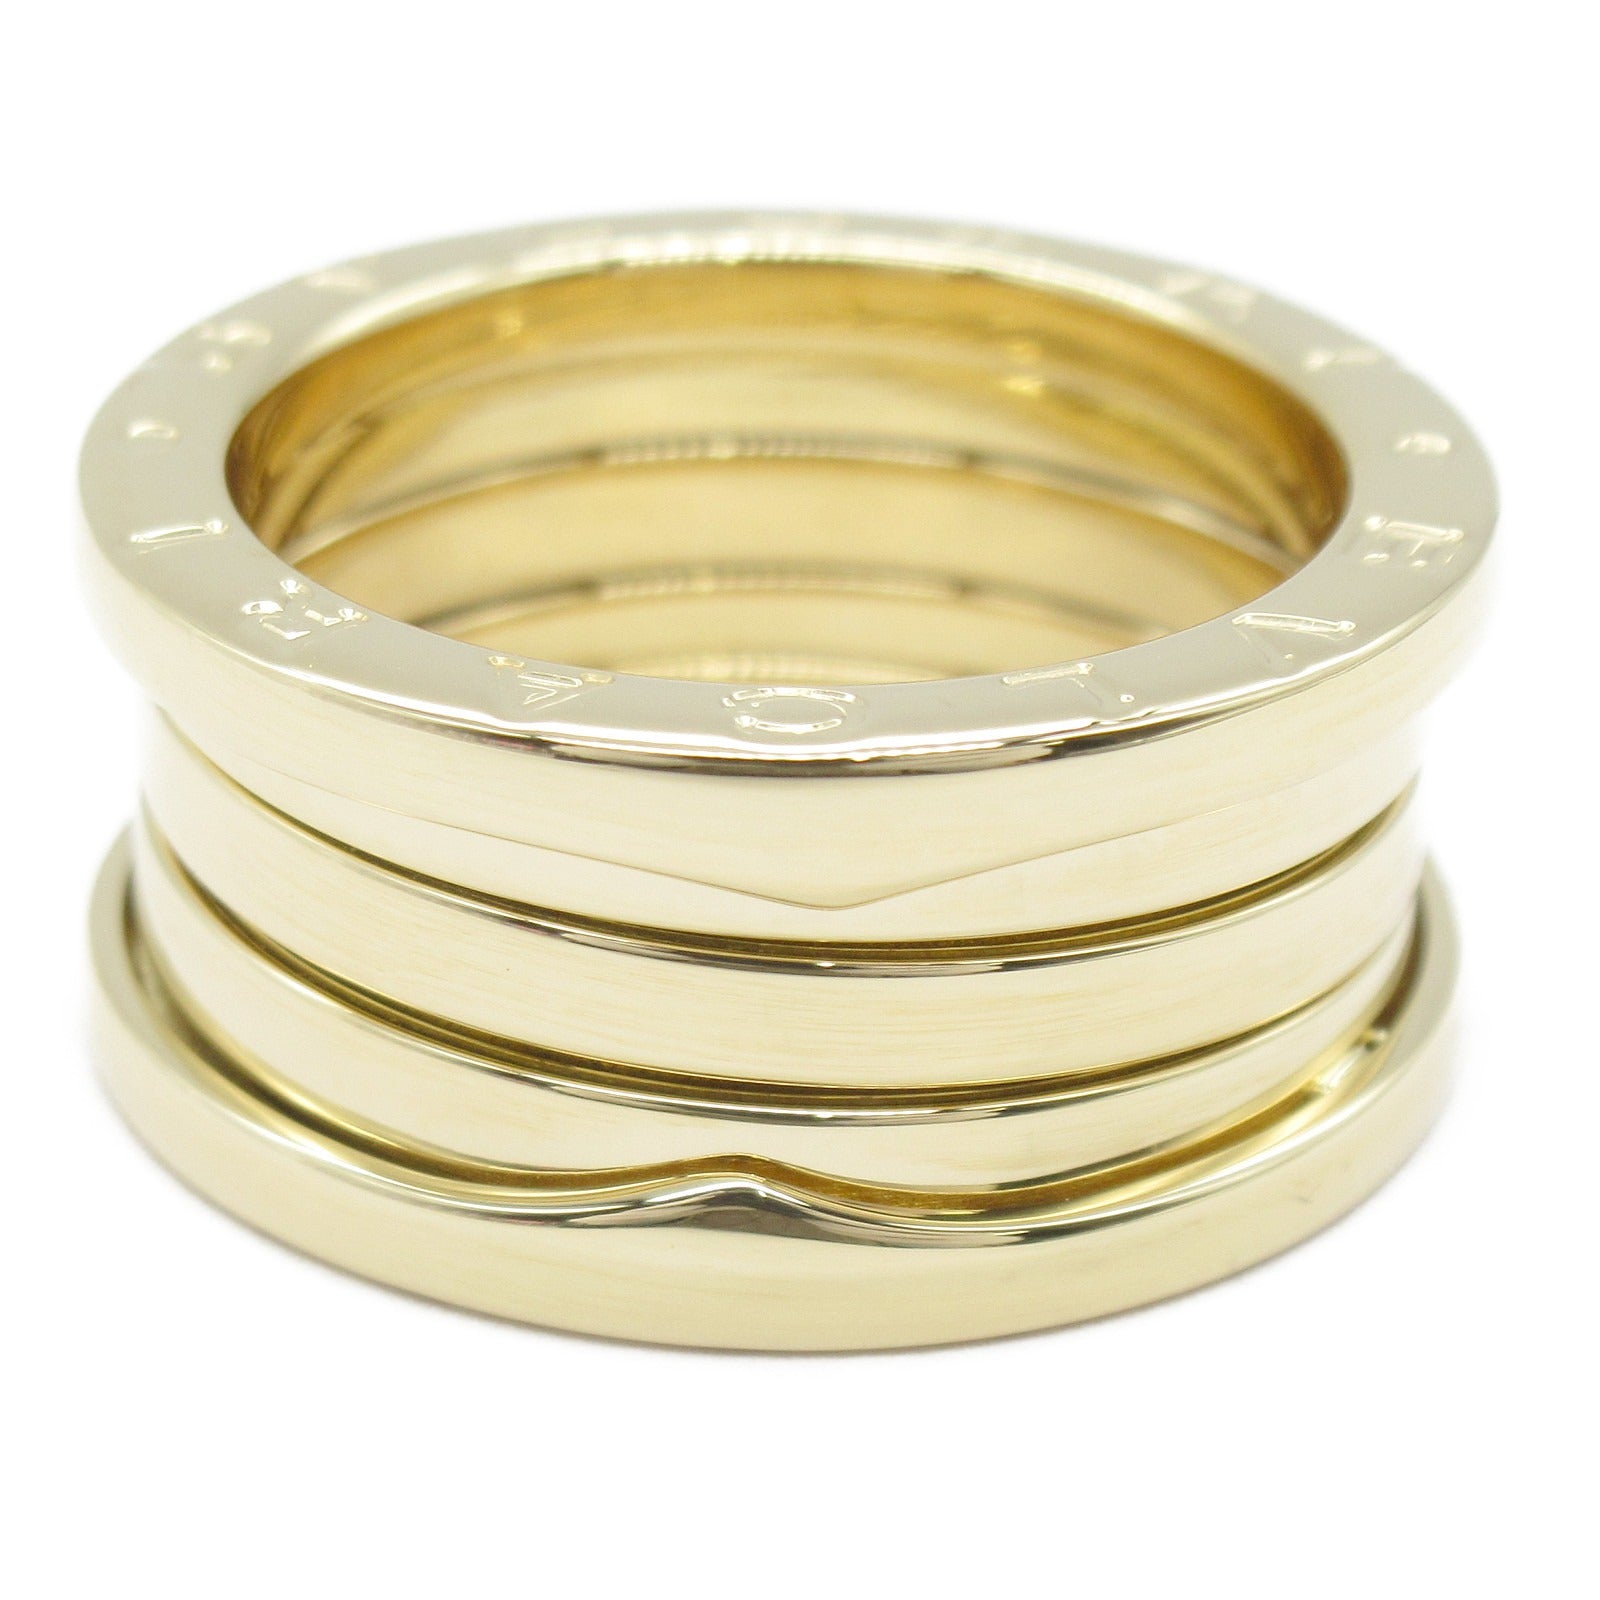 Bulgari BVLGARI B-zero1 Beezero One Ring Ring Ring Jewelry K18 (Yellow G)   Gold